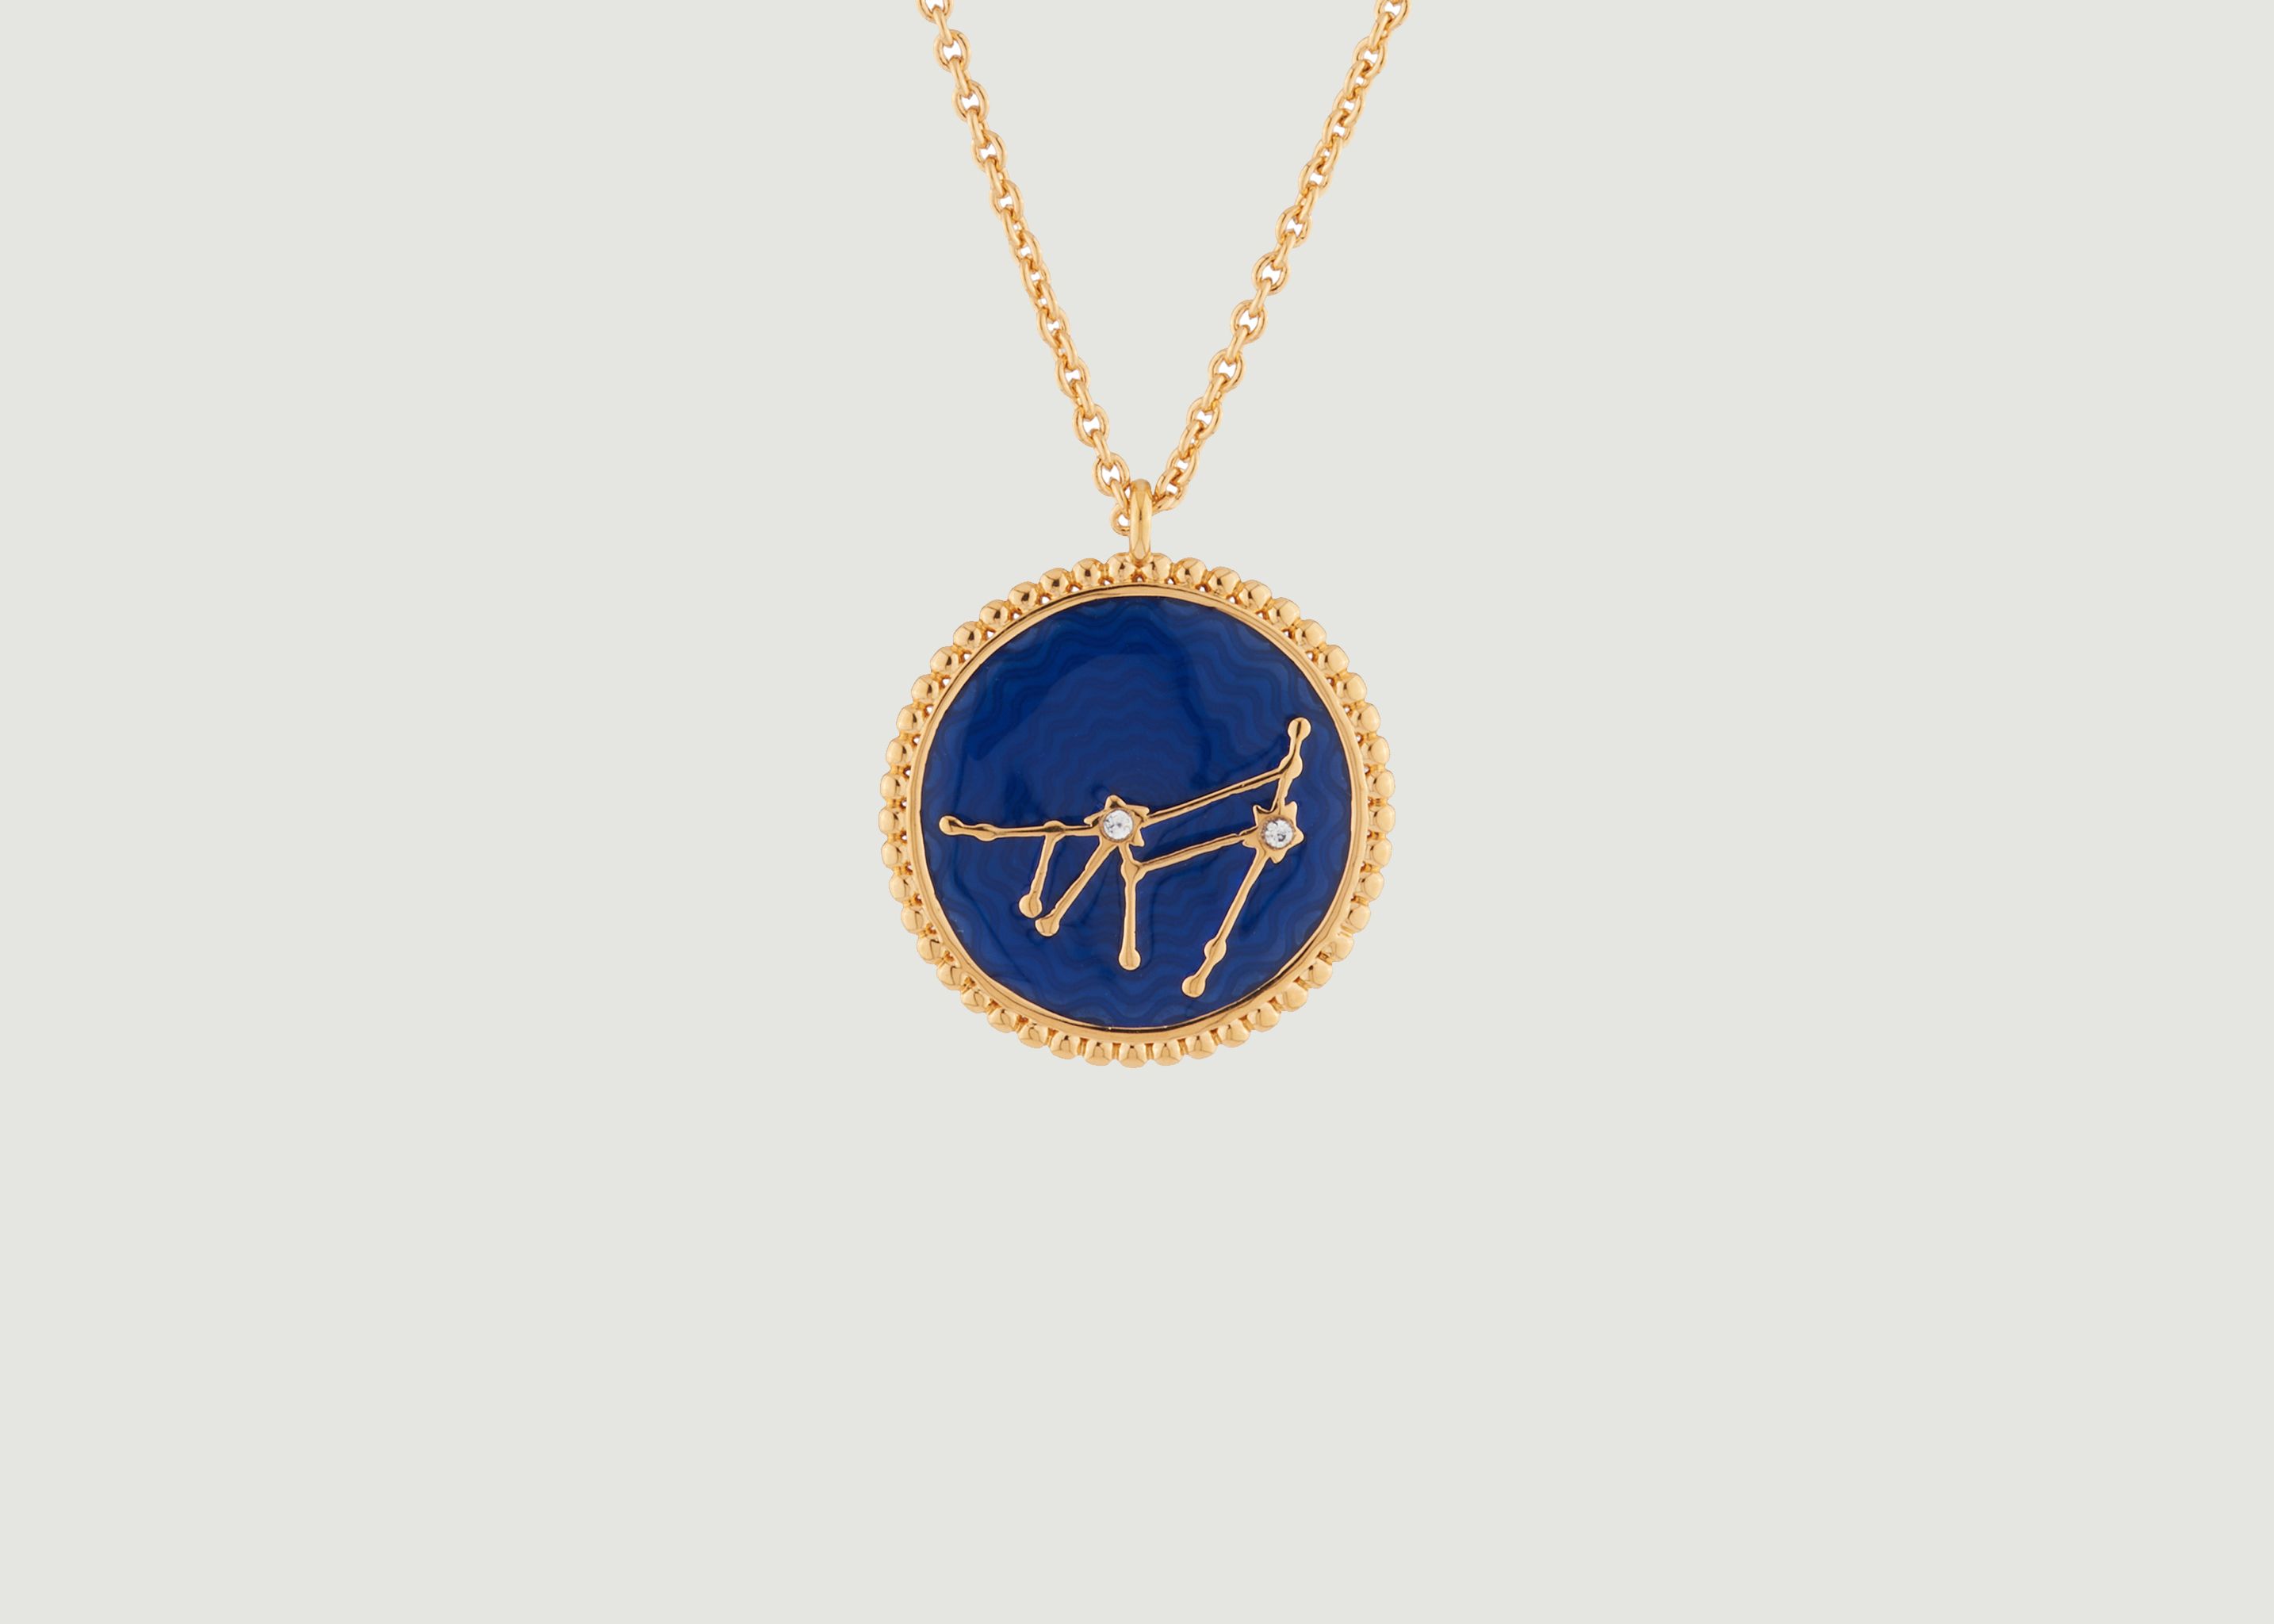 Capricorn astrological sign necklace with pendant - Les Néréides